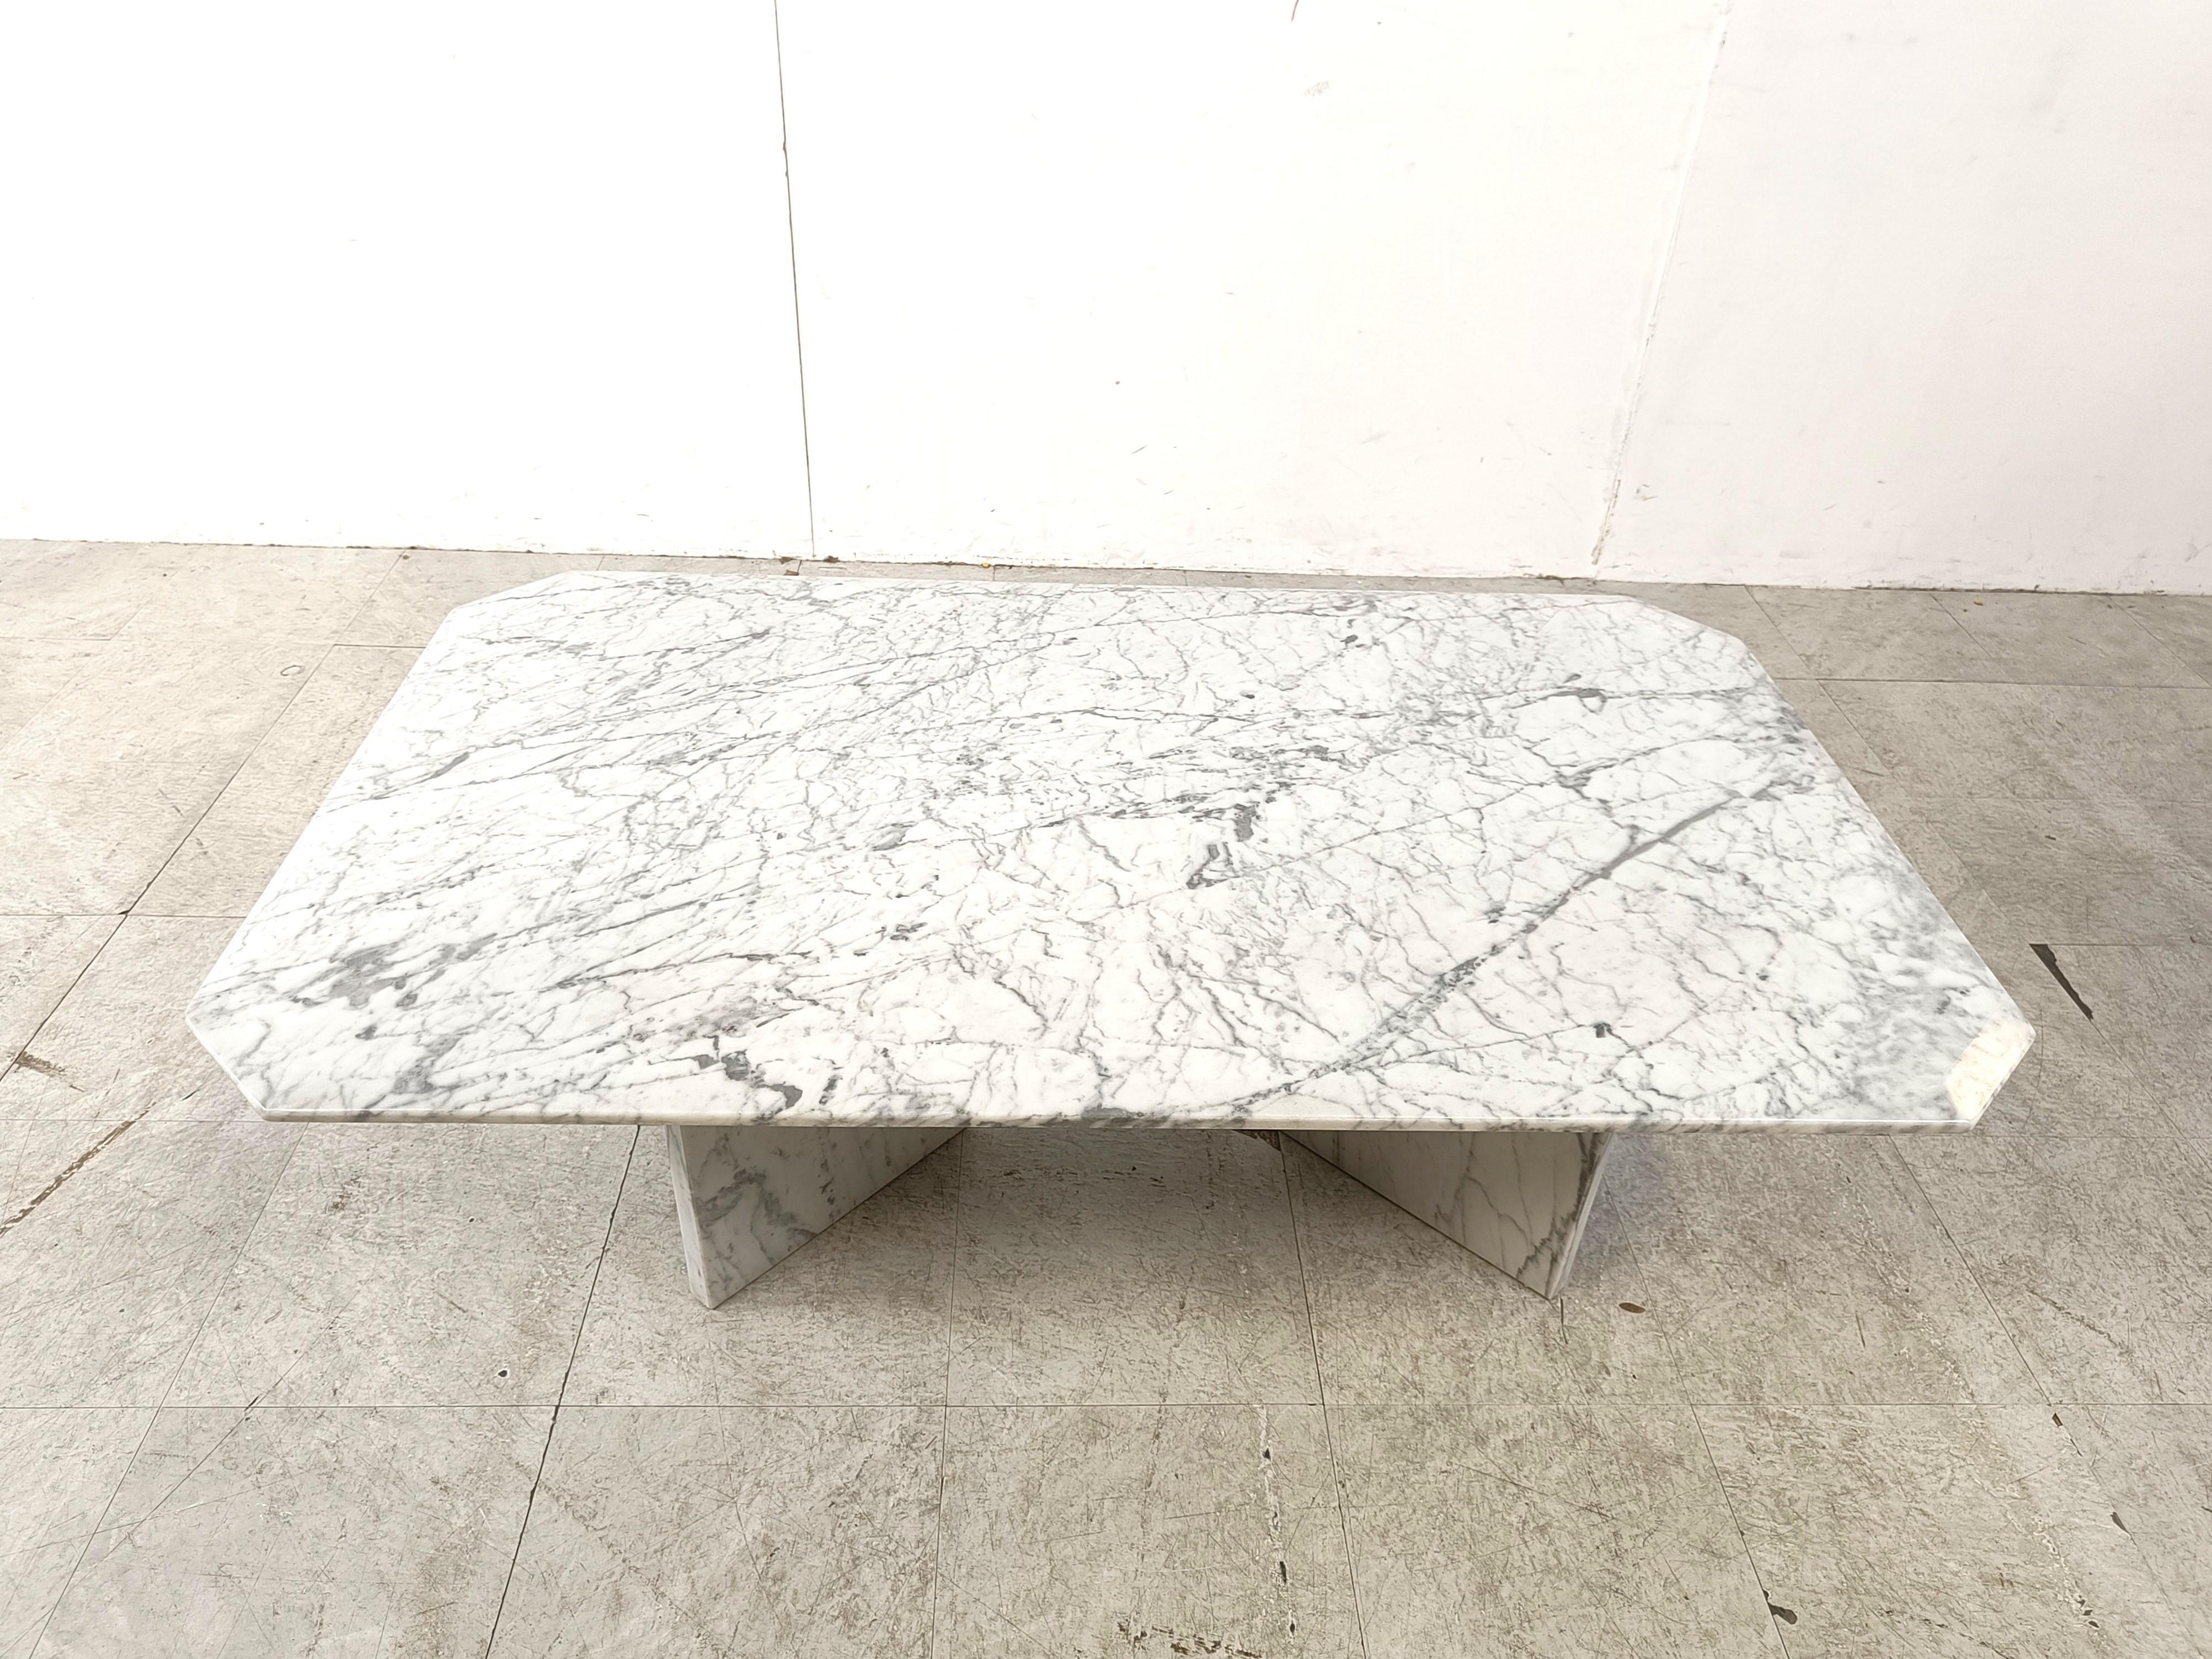 Table basse intemporelle en marbre blanc avec un plateau biseauté et deux bases séparées.

Magnifique marbre teinté.

Bon état

Années 1970 - Italie 

Hauteur : 40cm/15.74